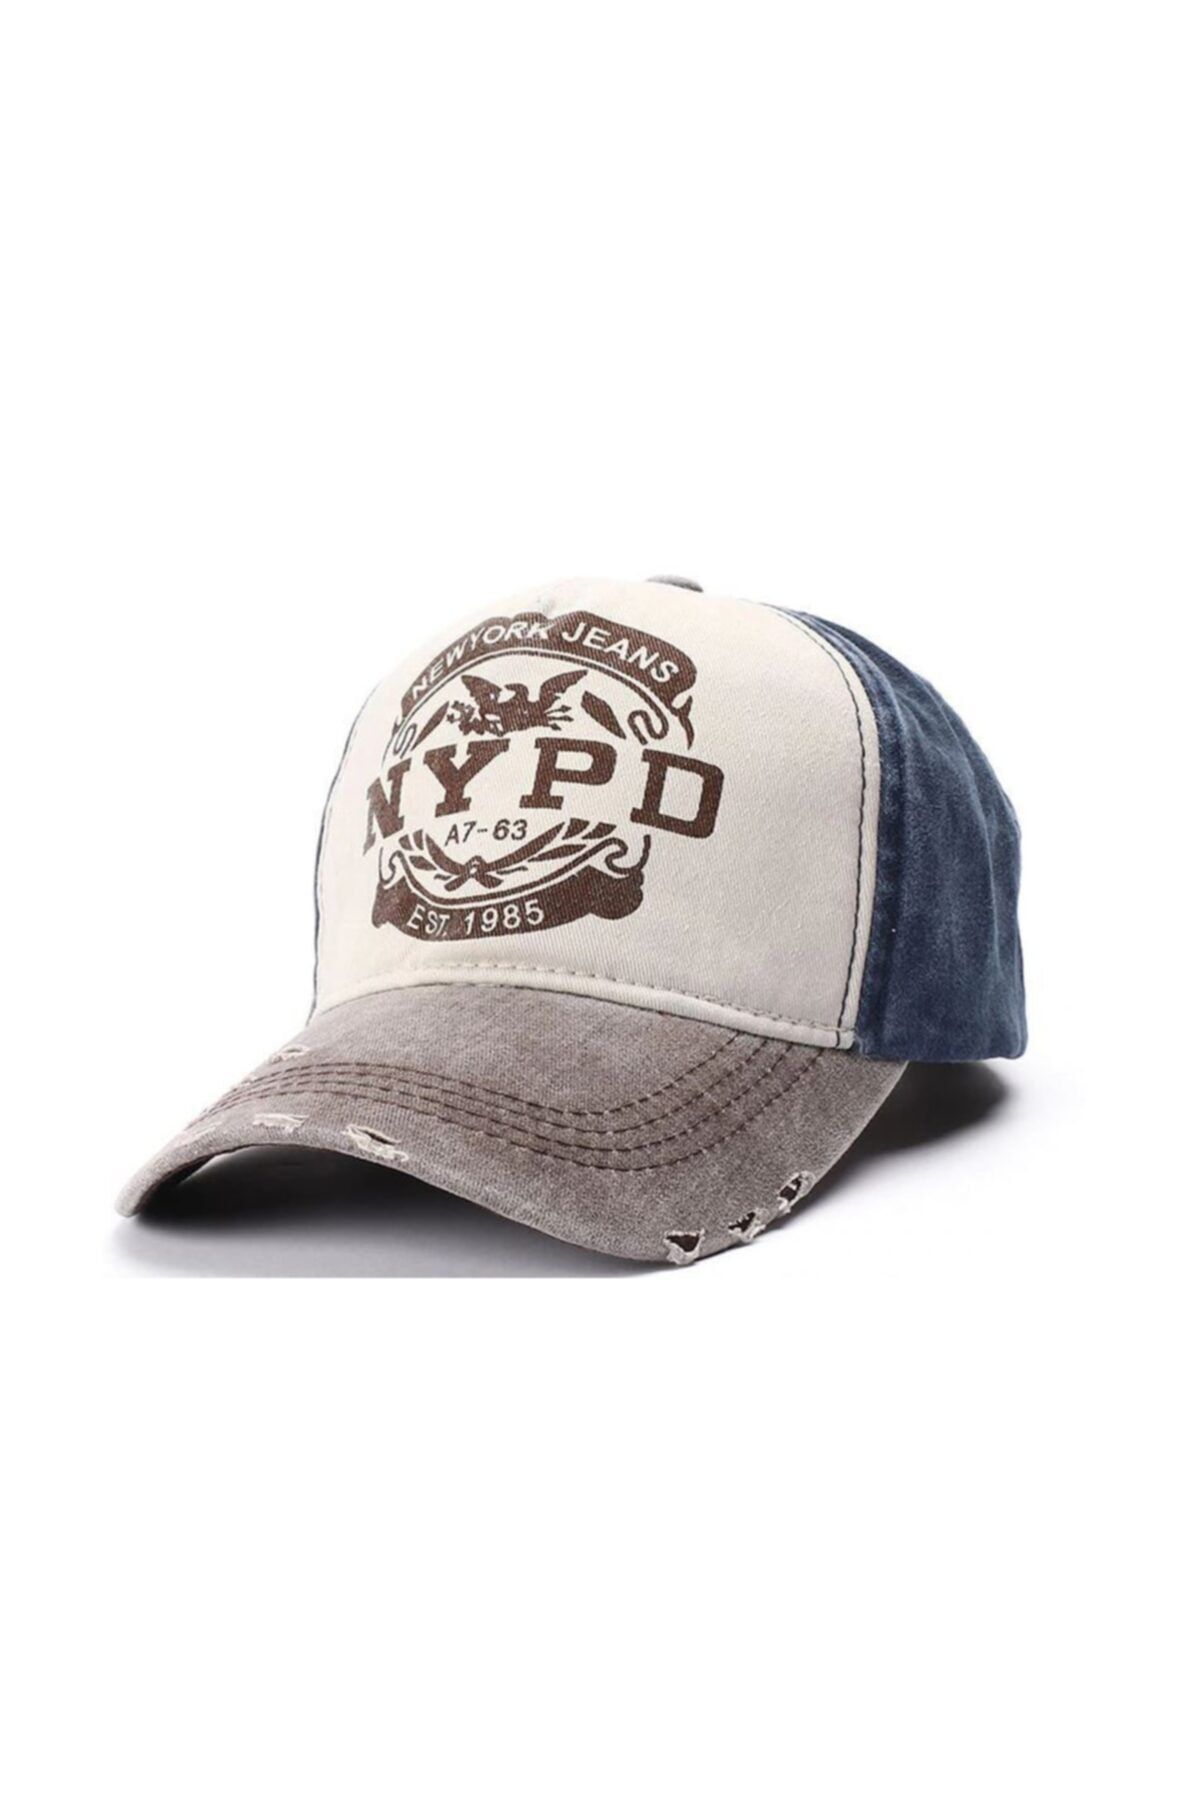 SİYASA Nypd Şapka Cap Şapka Eskitme Tasarım 2020 Model Gri Mavi